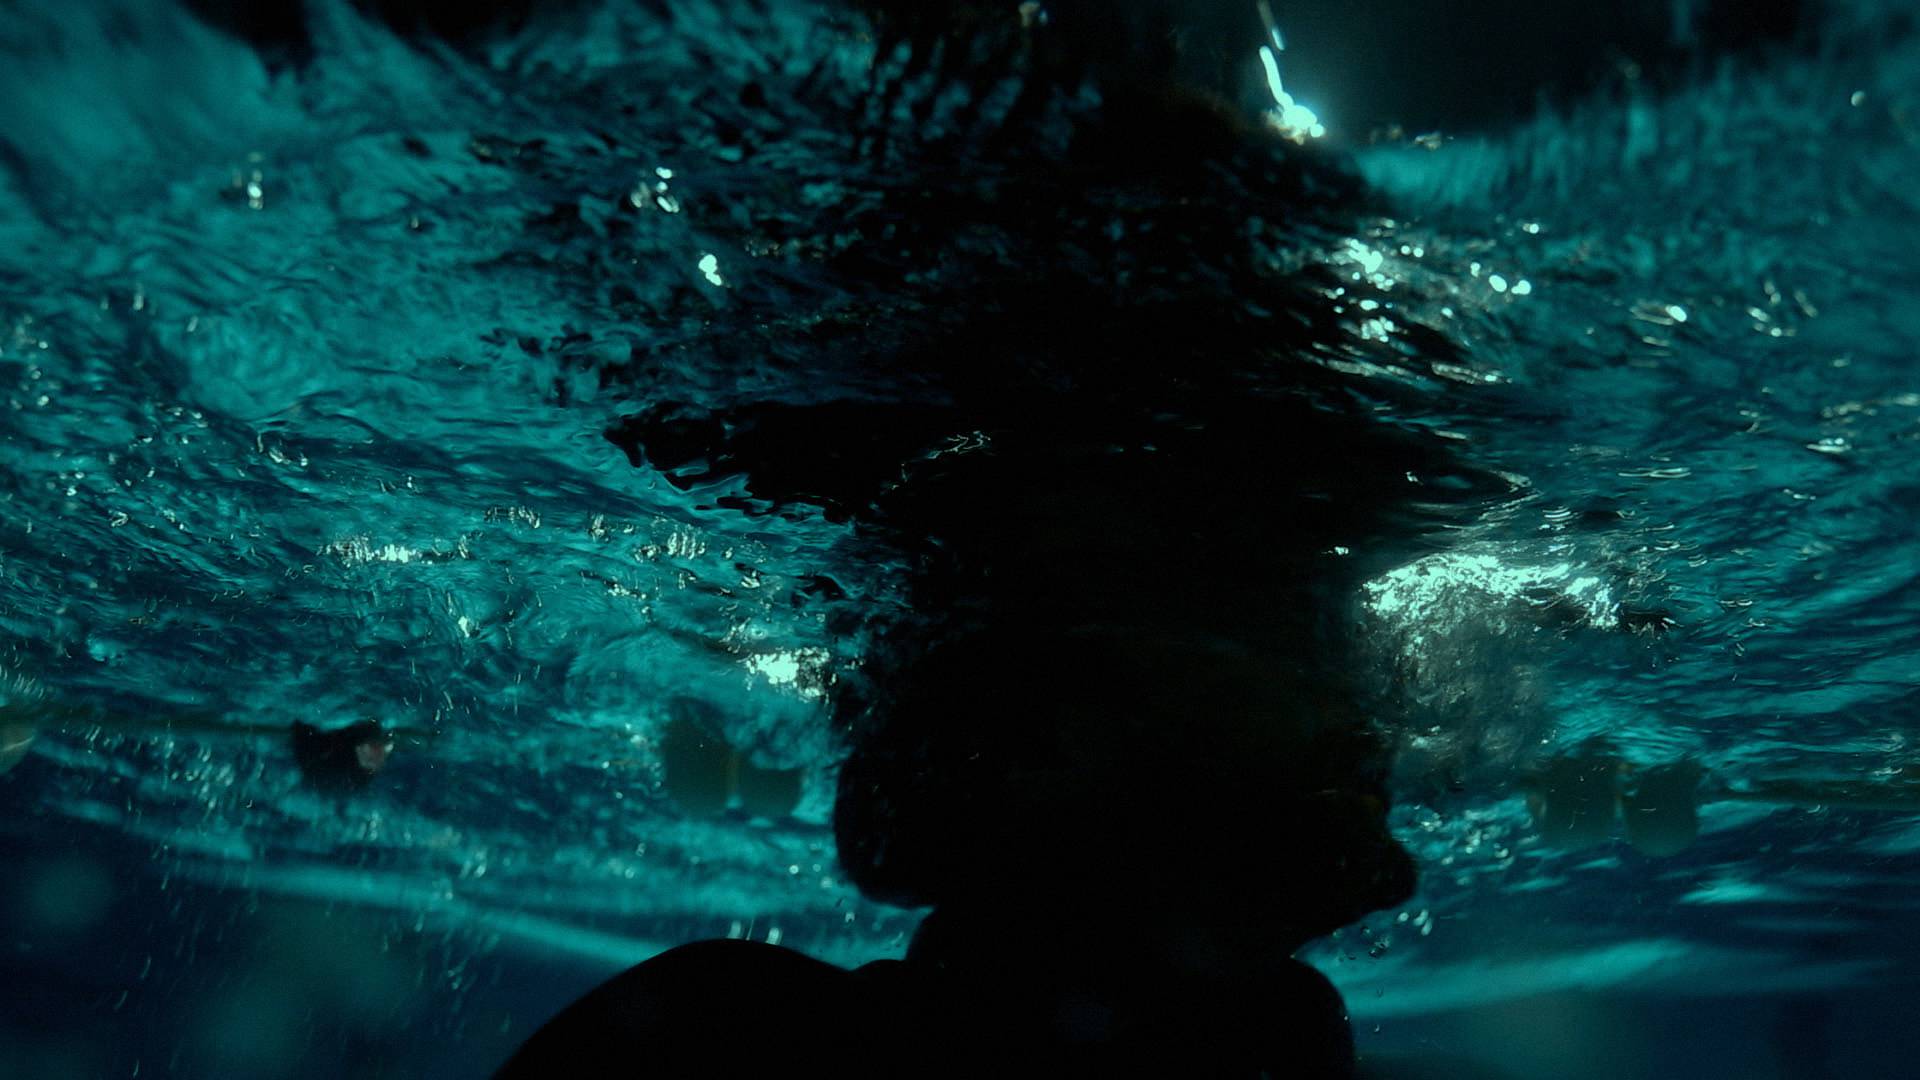 Nižetić snimio spot pod vodom: Osjećaj kada zadržim dah i zaronim je nešto najposebnije